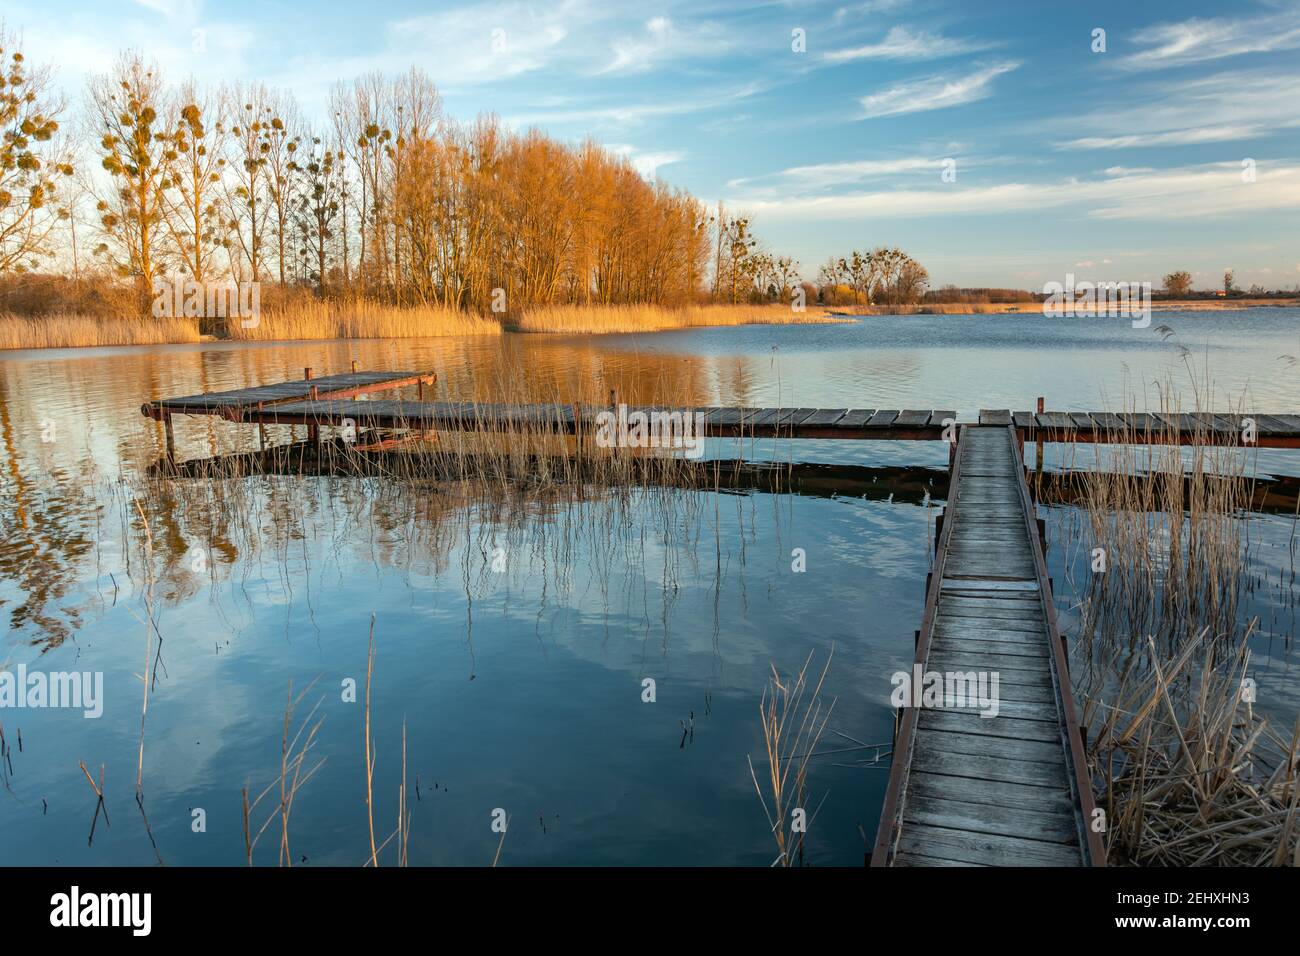 Fischerpier am Ufer eines ruhigen Sees, Stankow, Polen Stockfoto